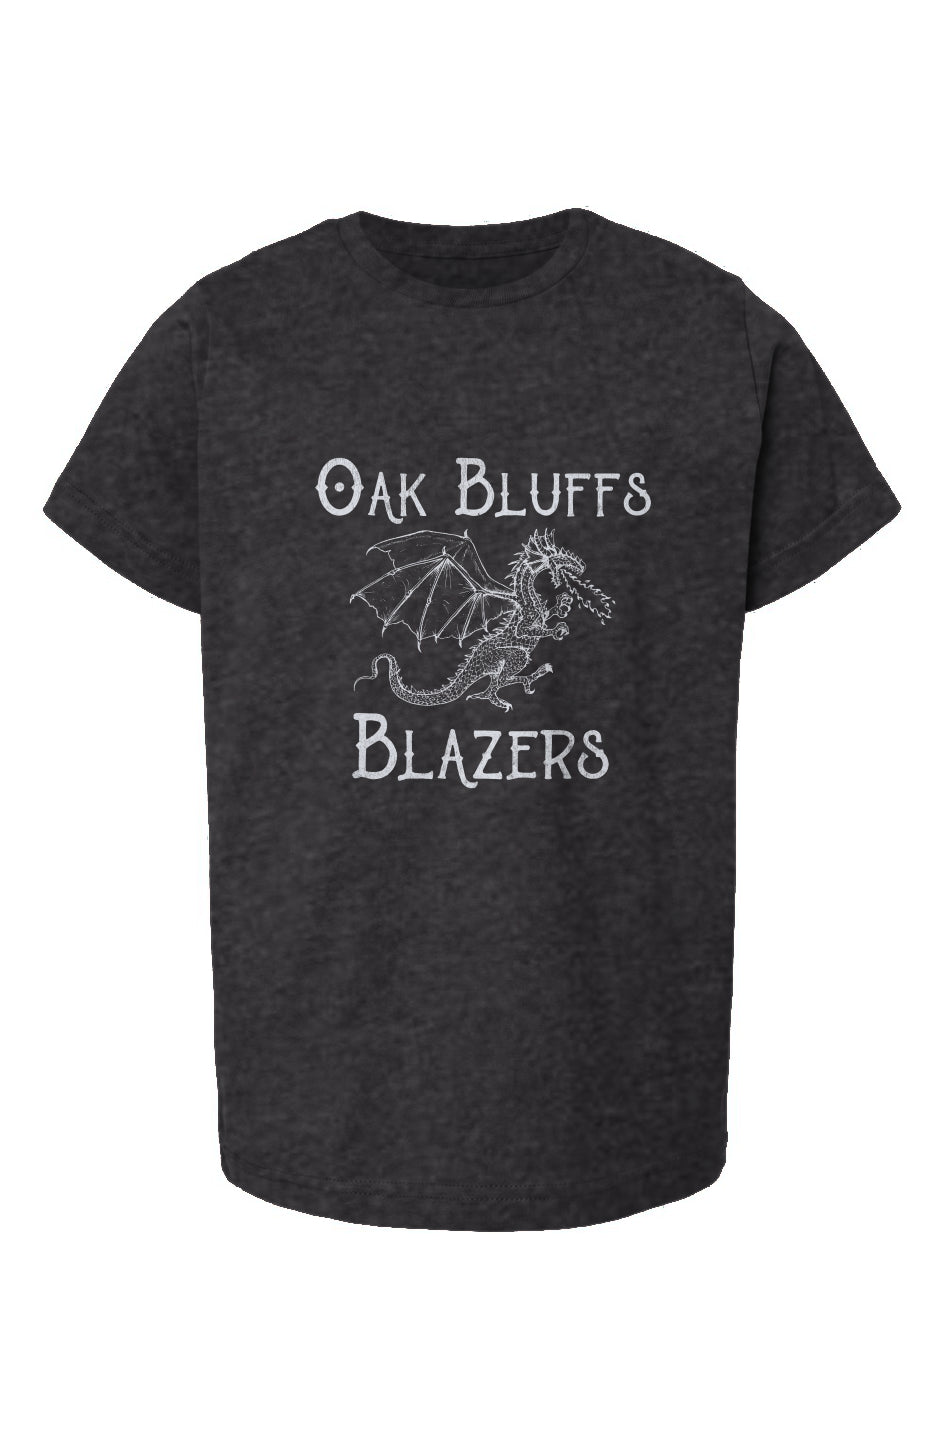 Oak Bluffs Blazers Youth Tee